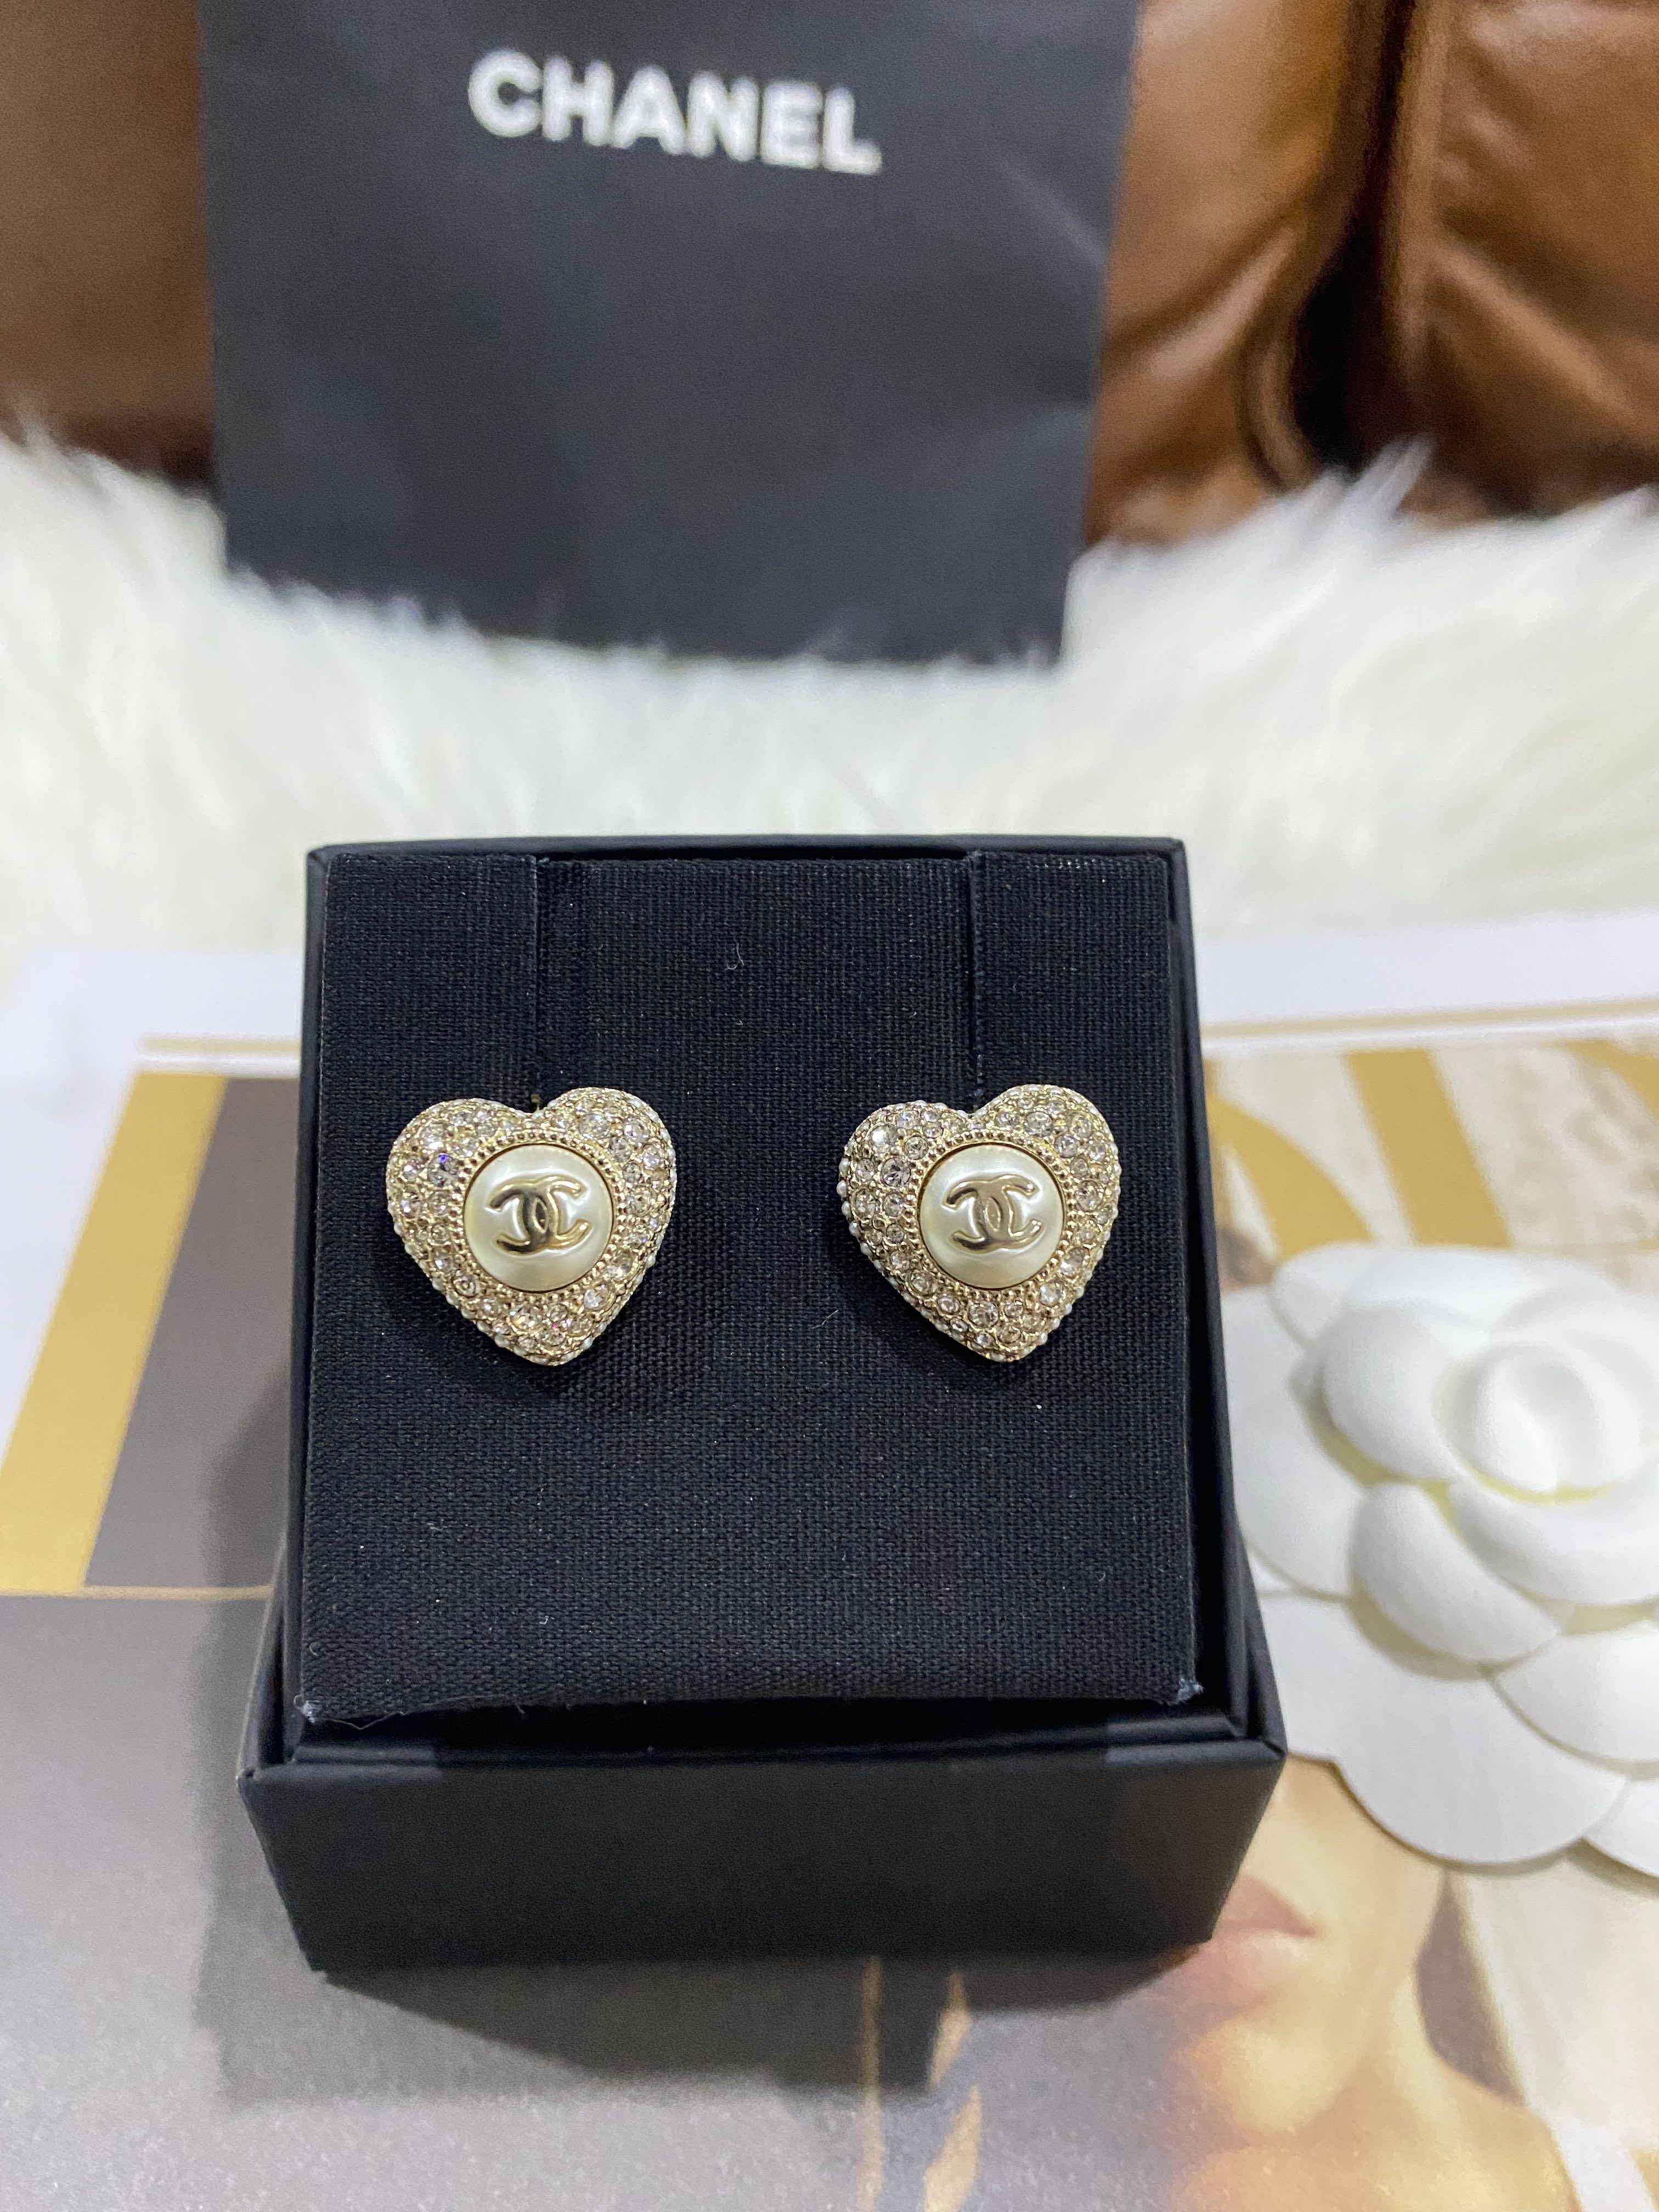 chanel pearl earrings drop silver